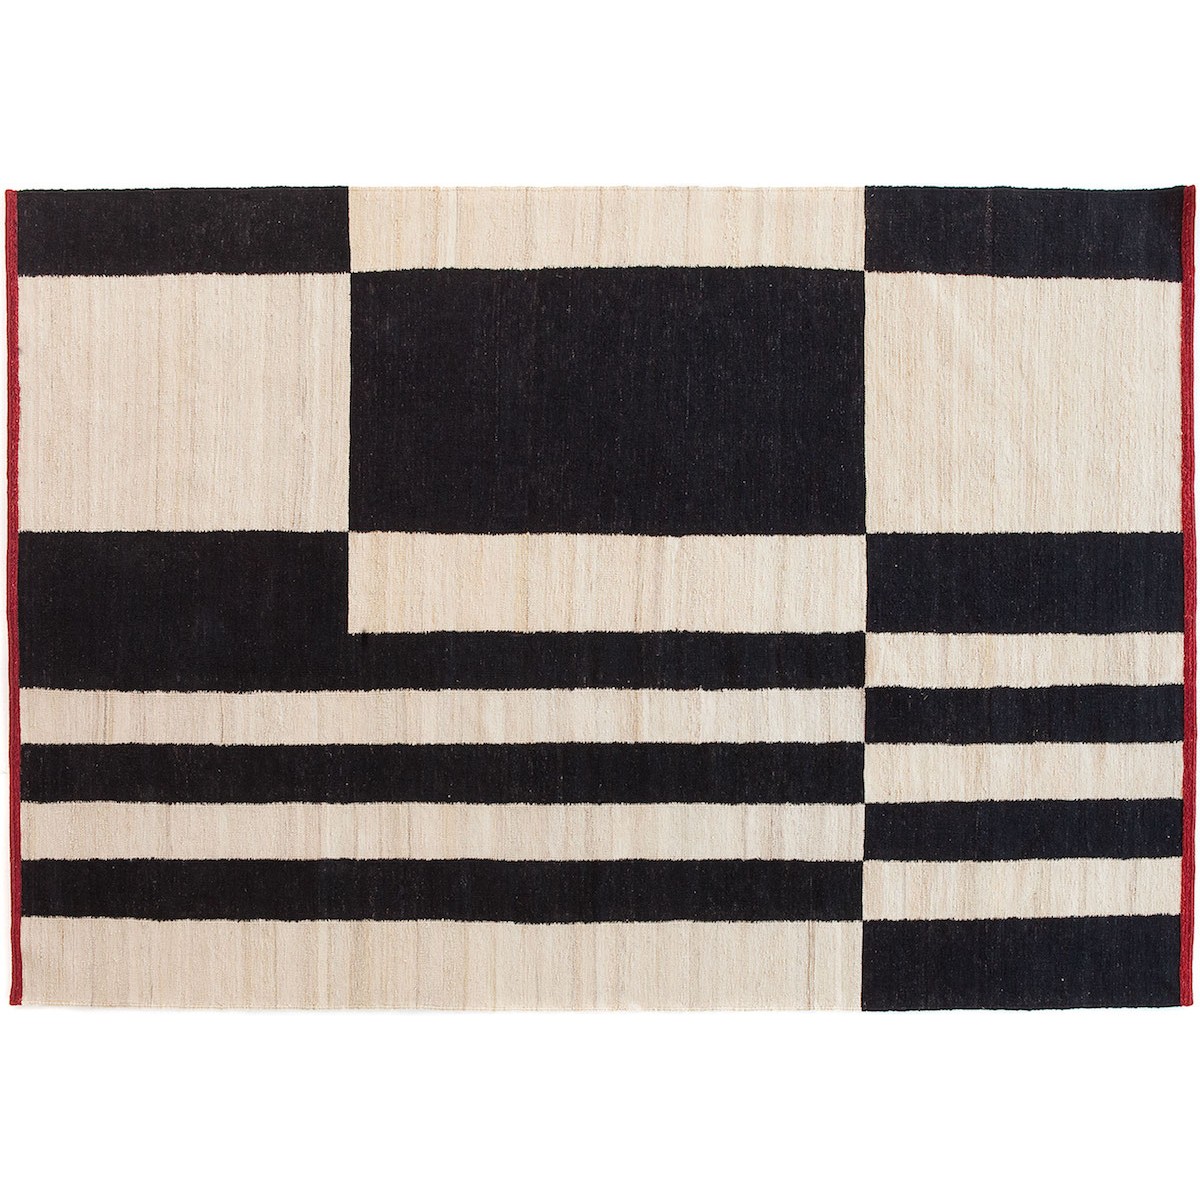 170x240cm - Melange Stripes 1 rug